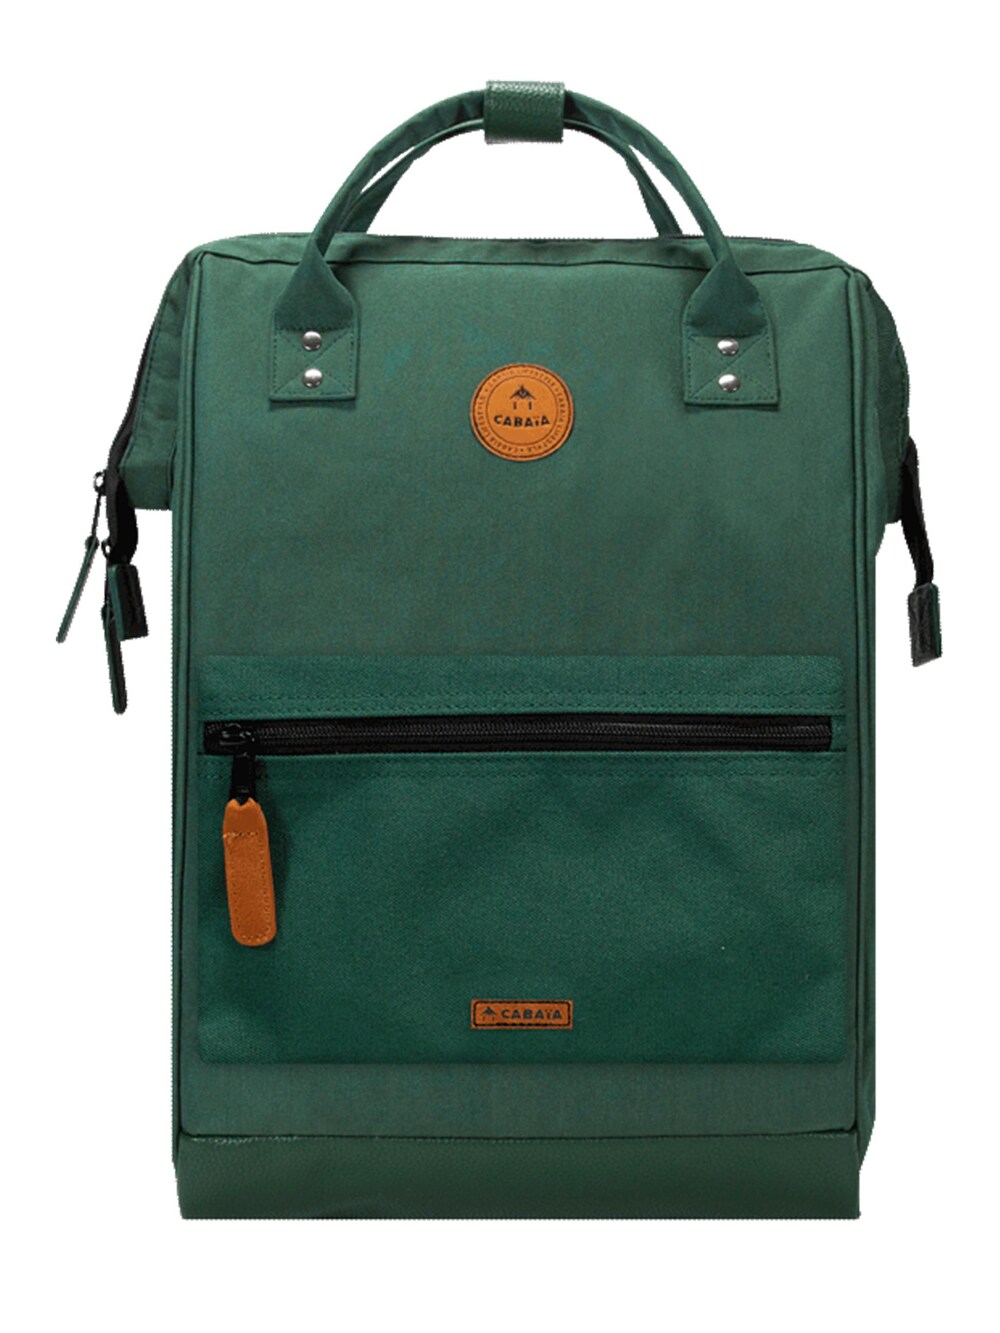 Рюкзак Cabaia Adventurer, темно-зеленый